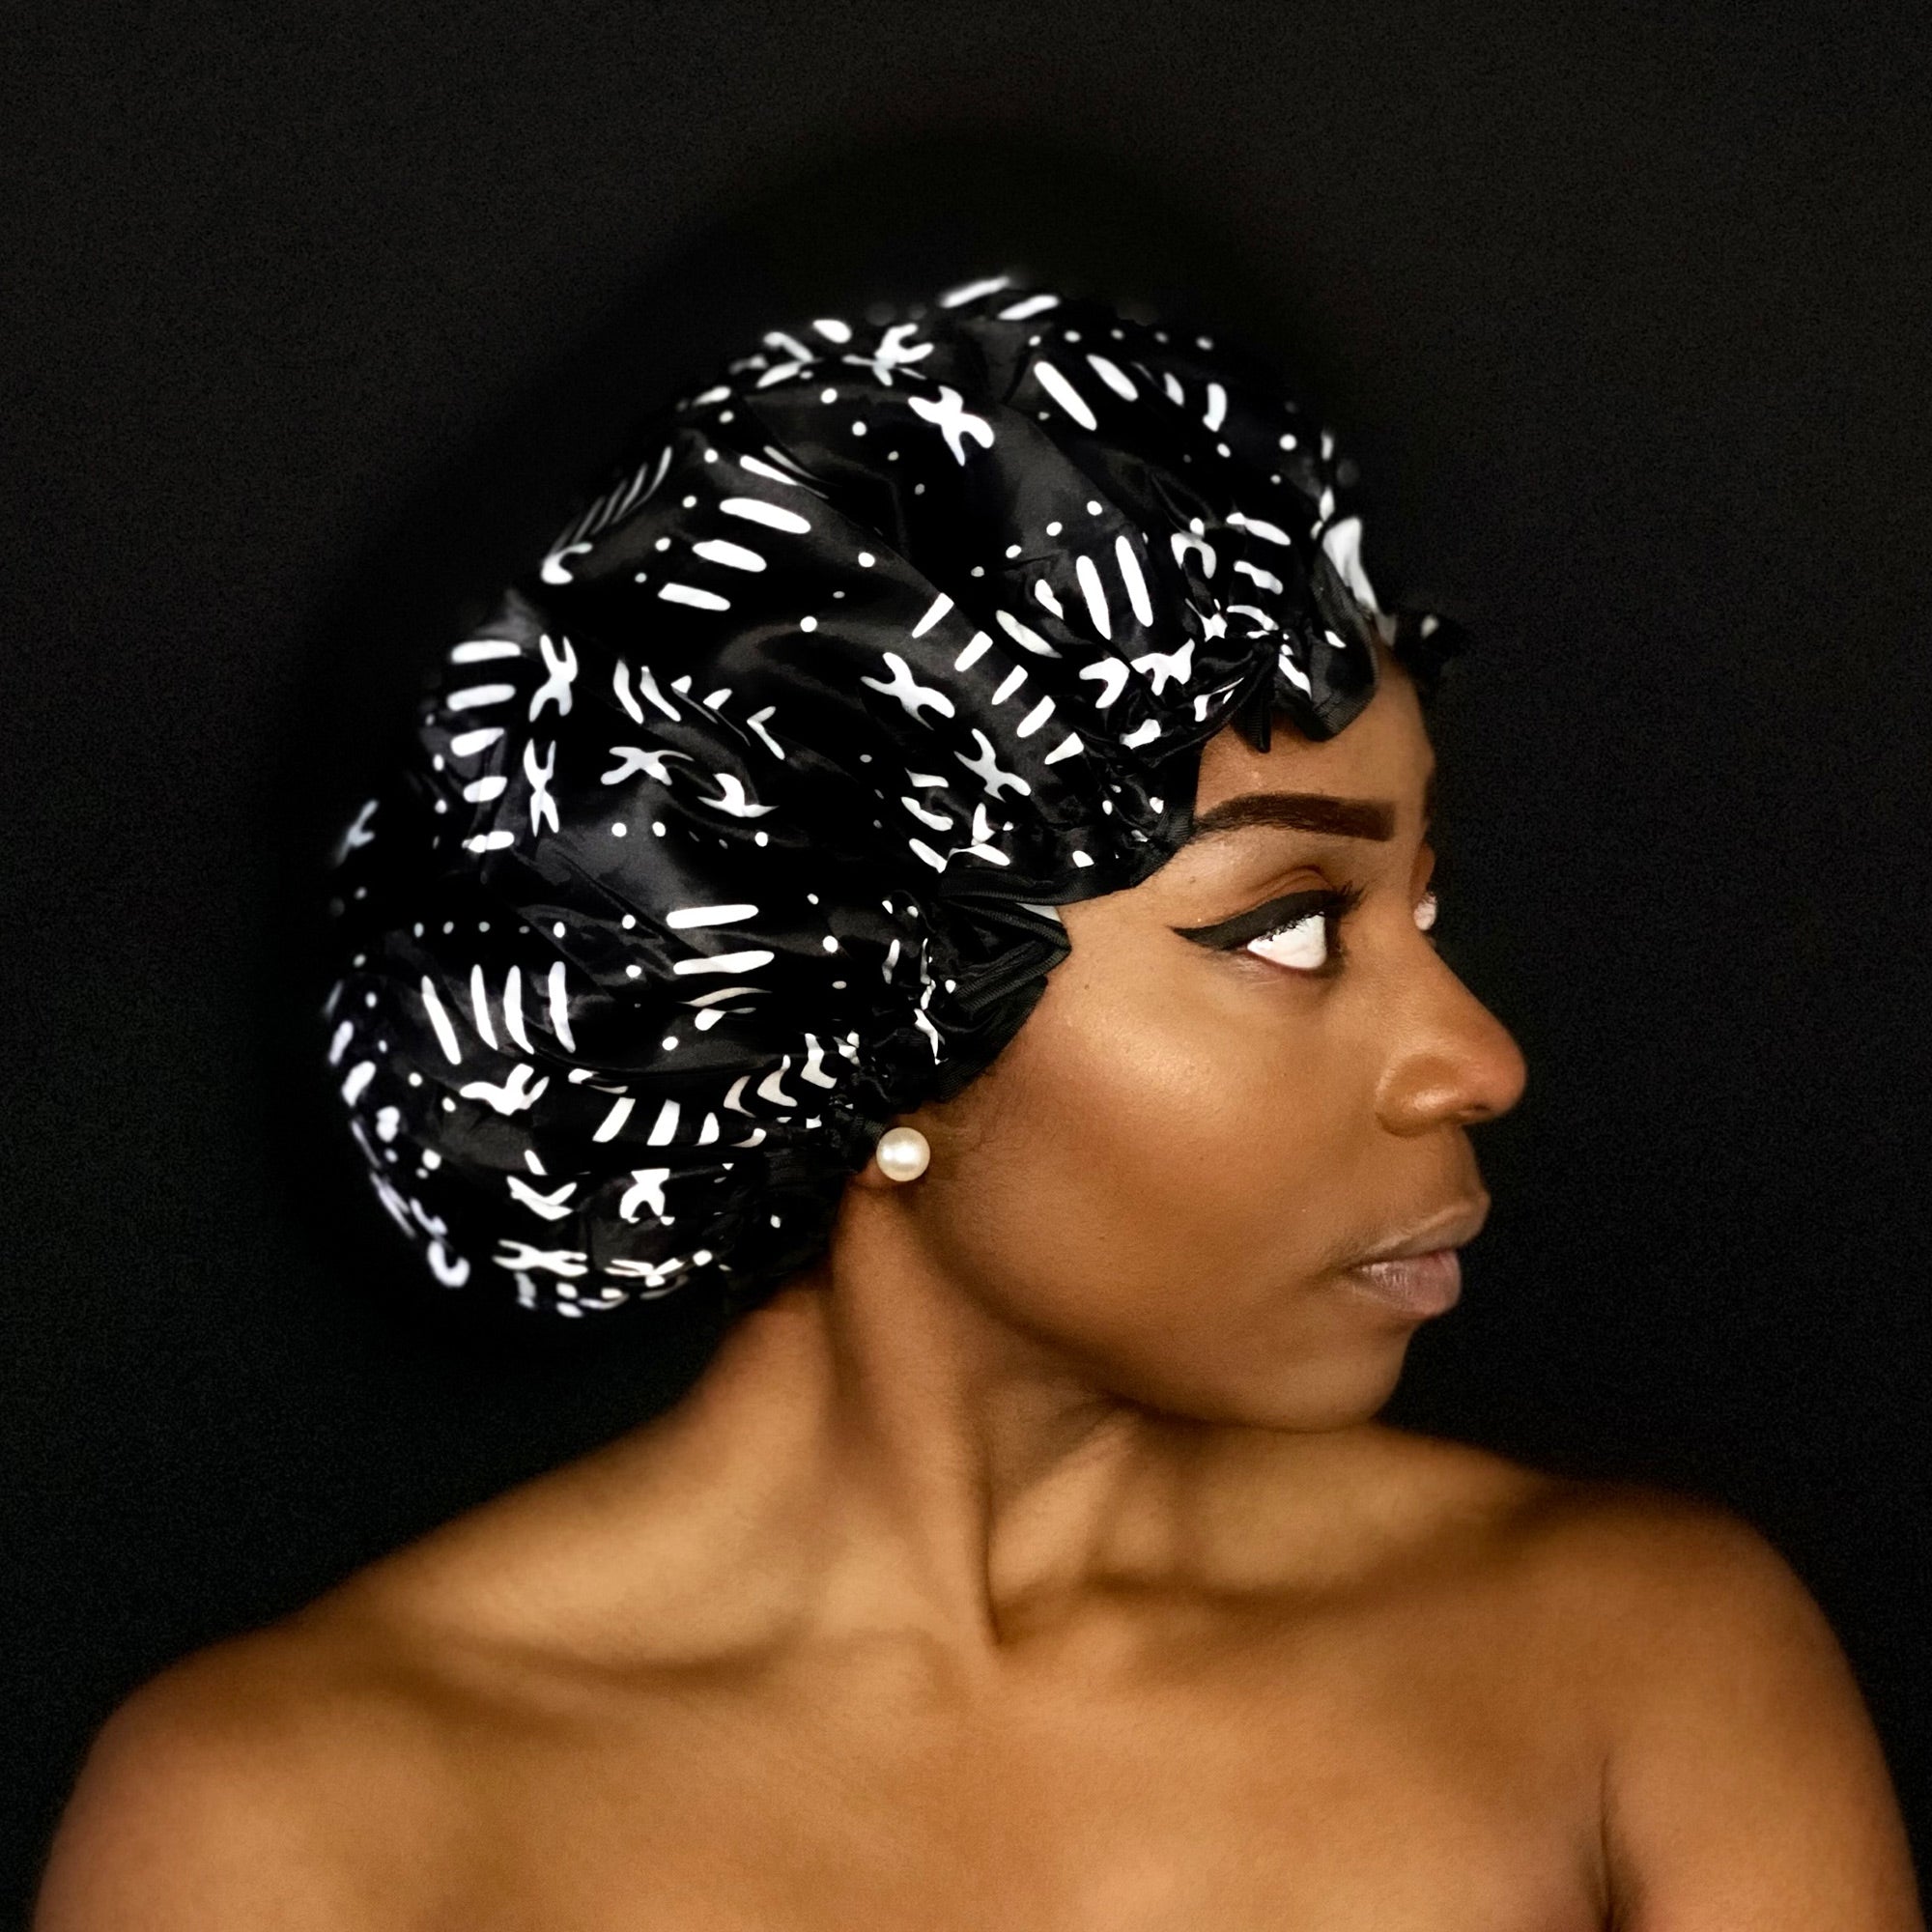 GROTE Douchemuts / Shower cap voor vol haar / krullen / afro - Zwart Witte bogolan